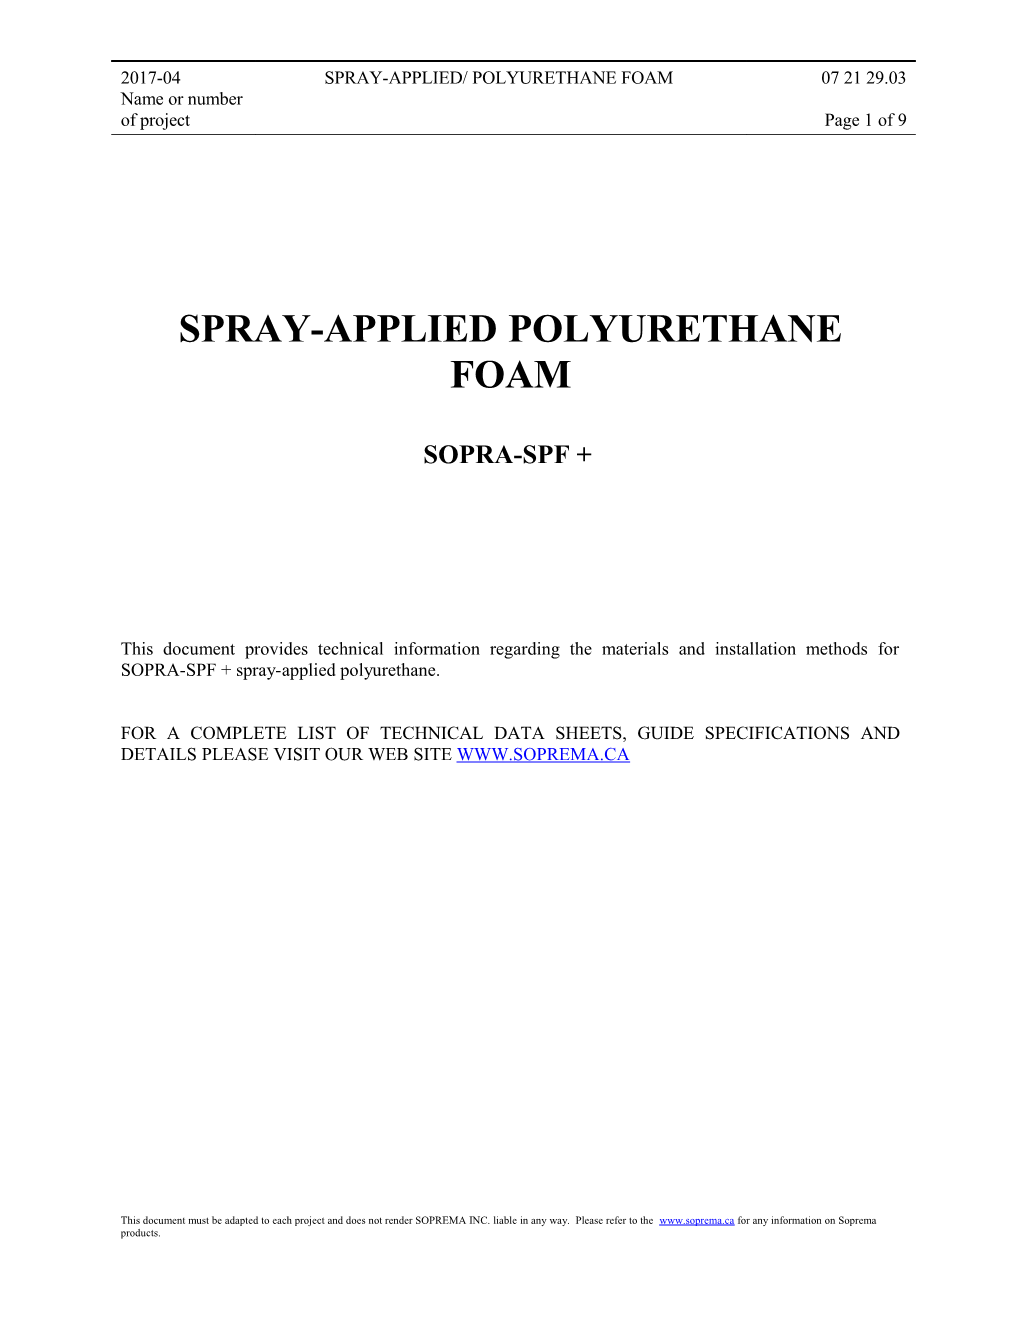 Spray-Applied Polyurethane Foam